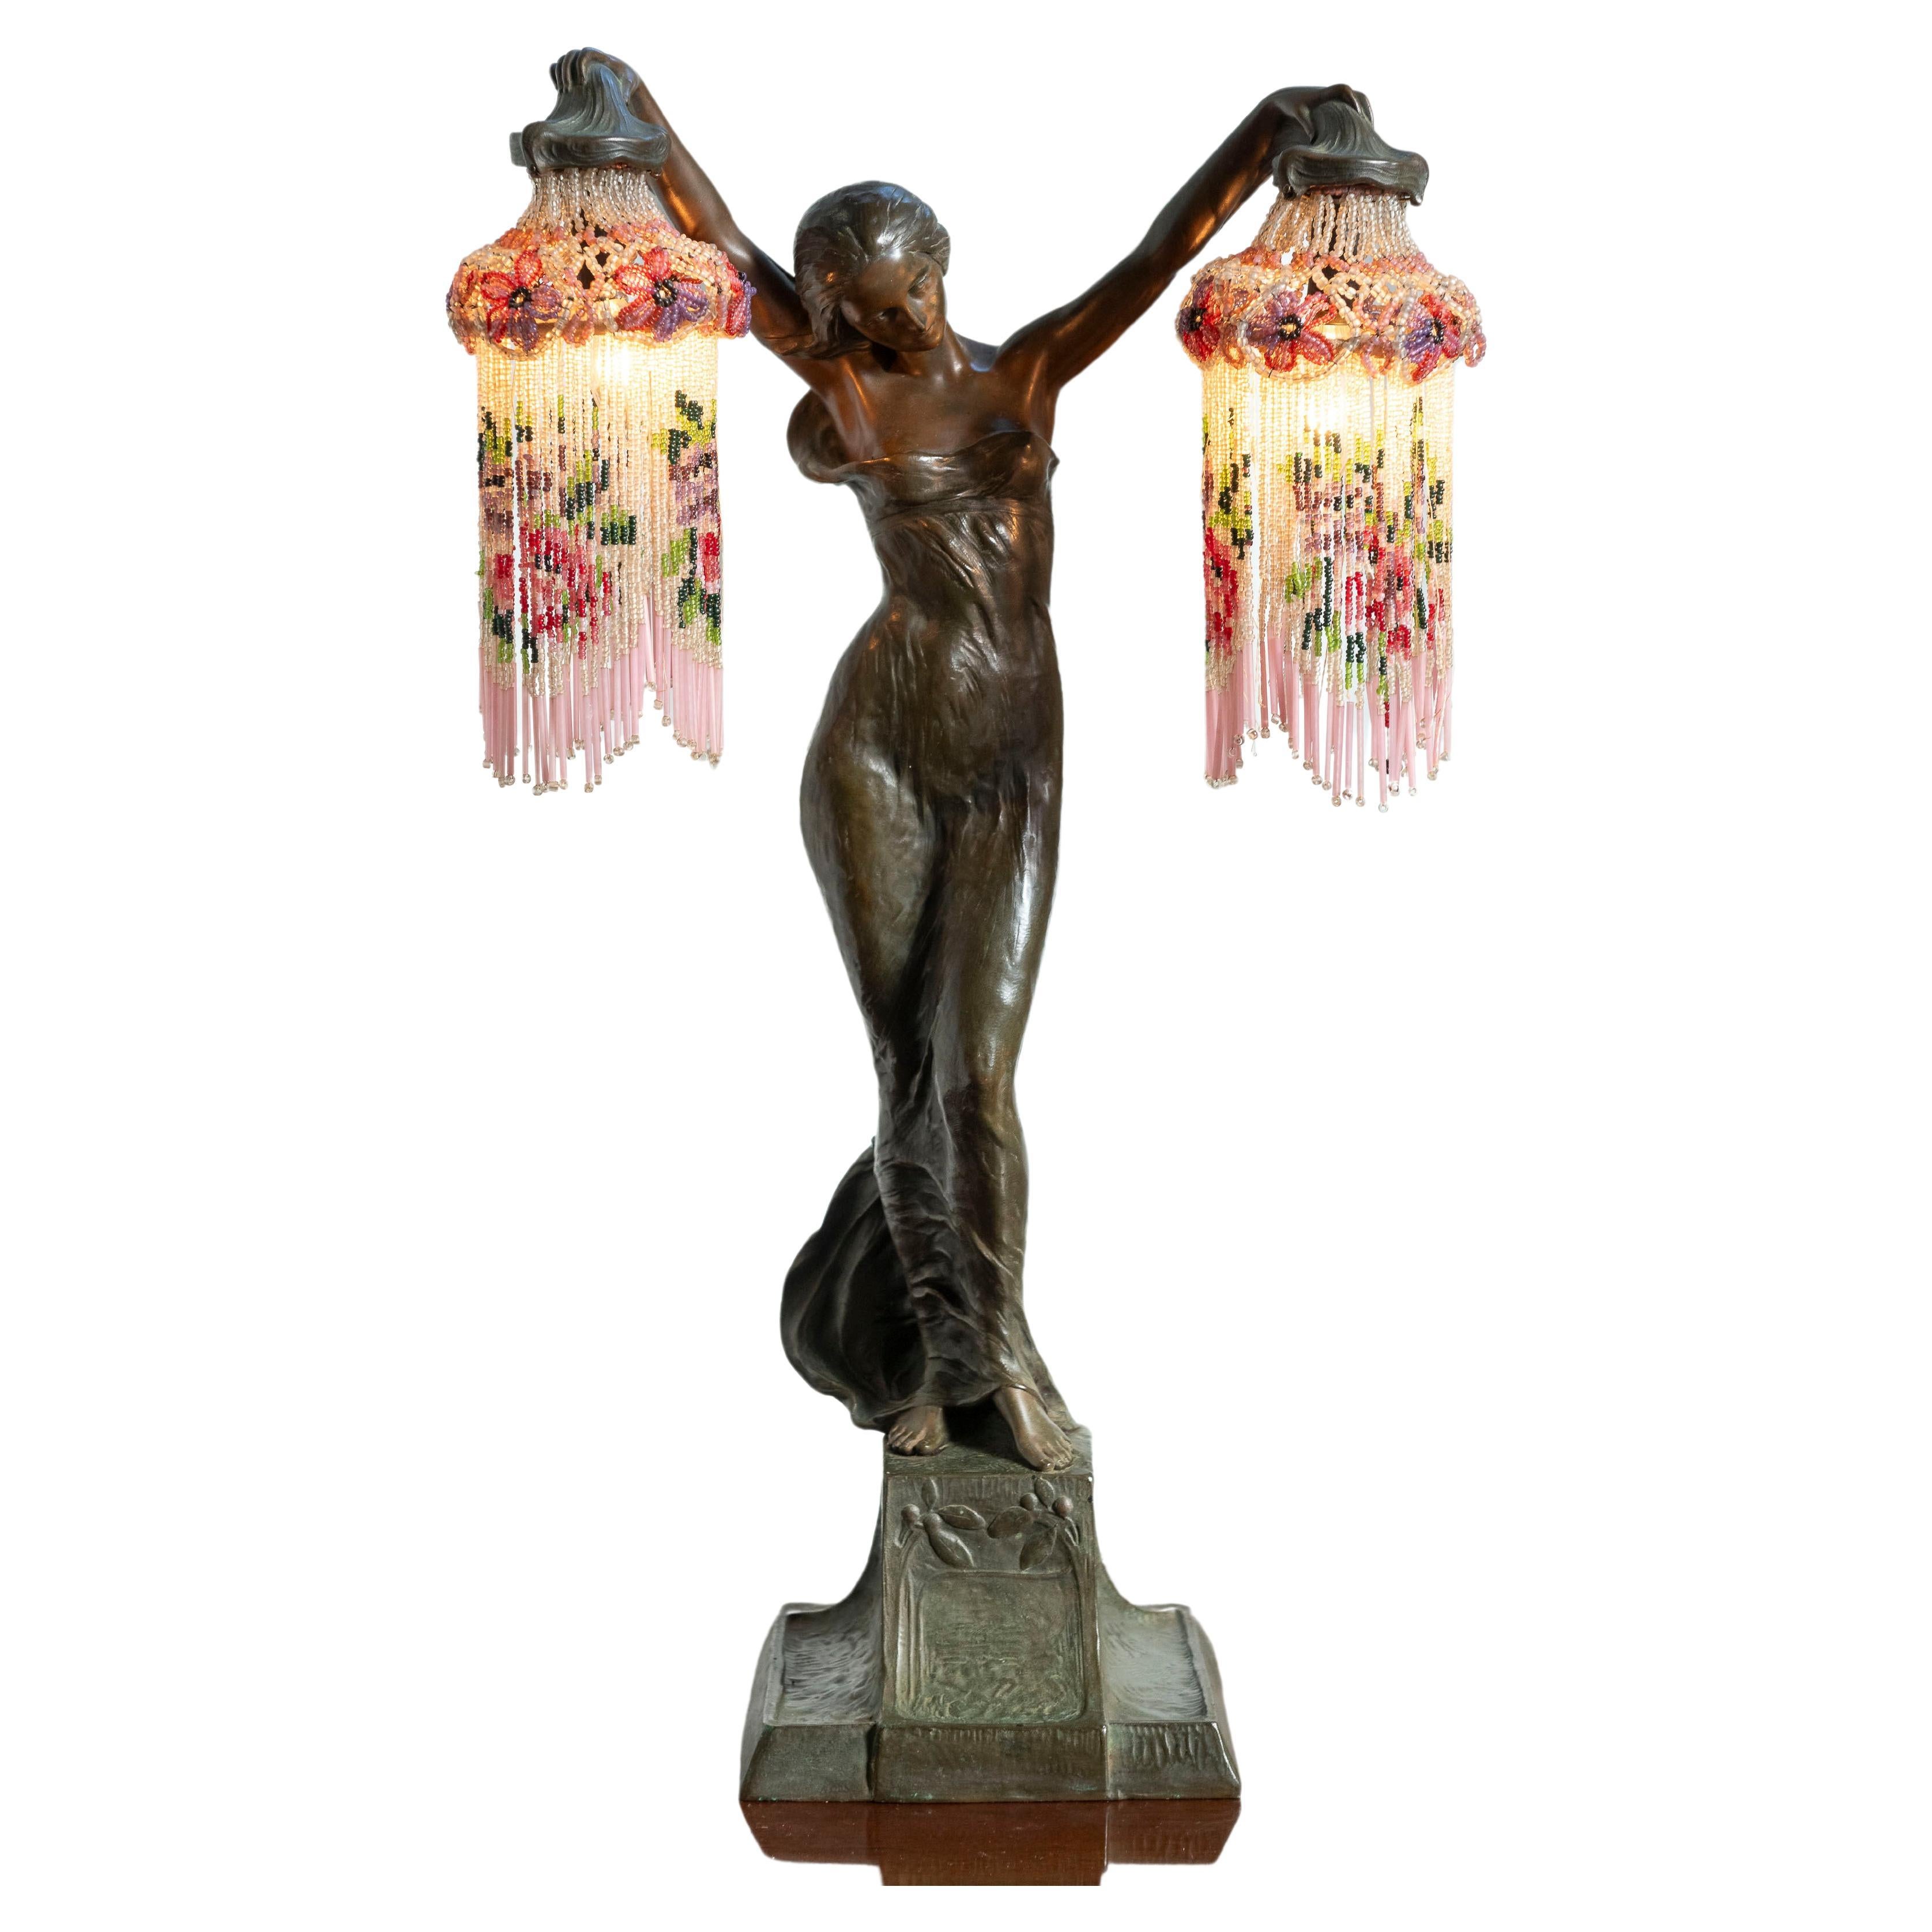 Art Nouveau Bronze Figural Lamp, Glass Beads, Teresczchuk (1875-1963) Austrian